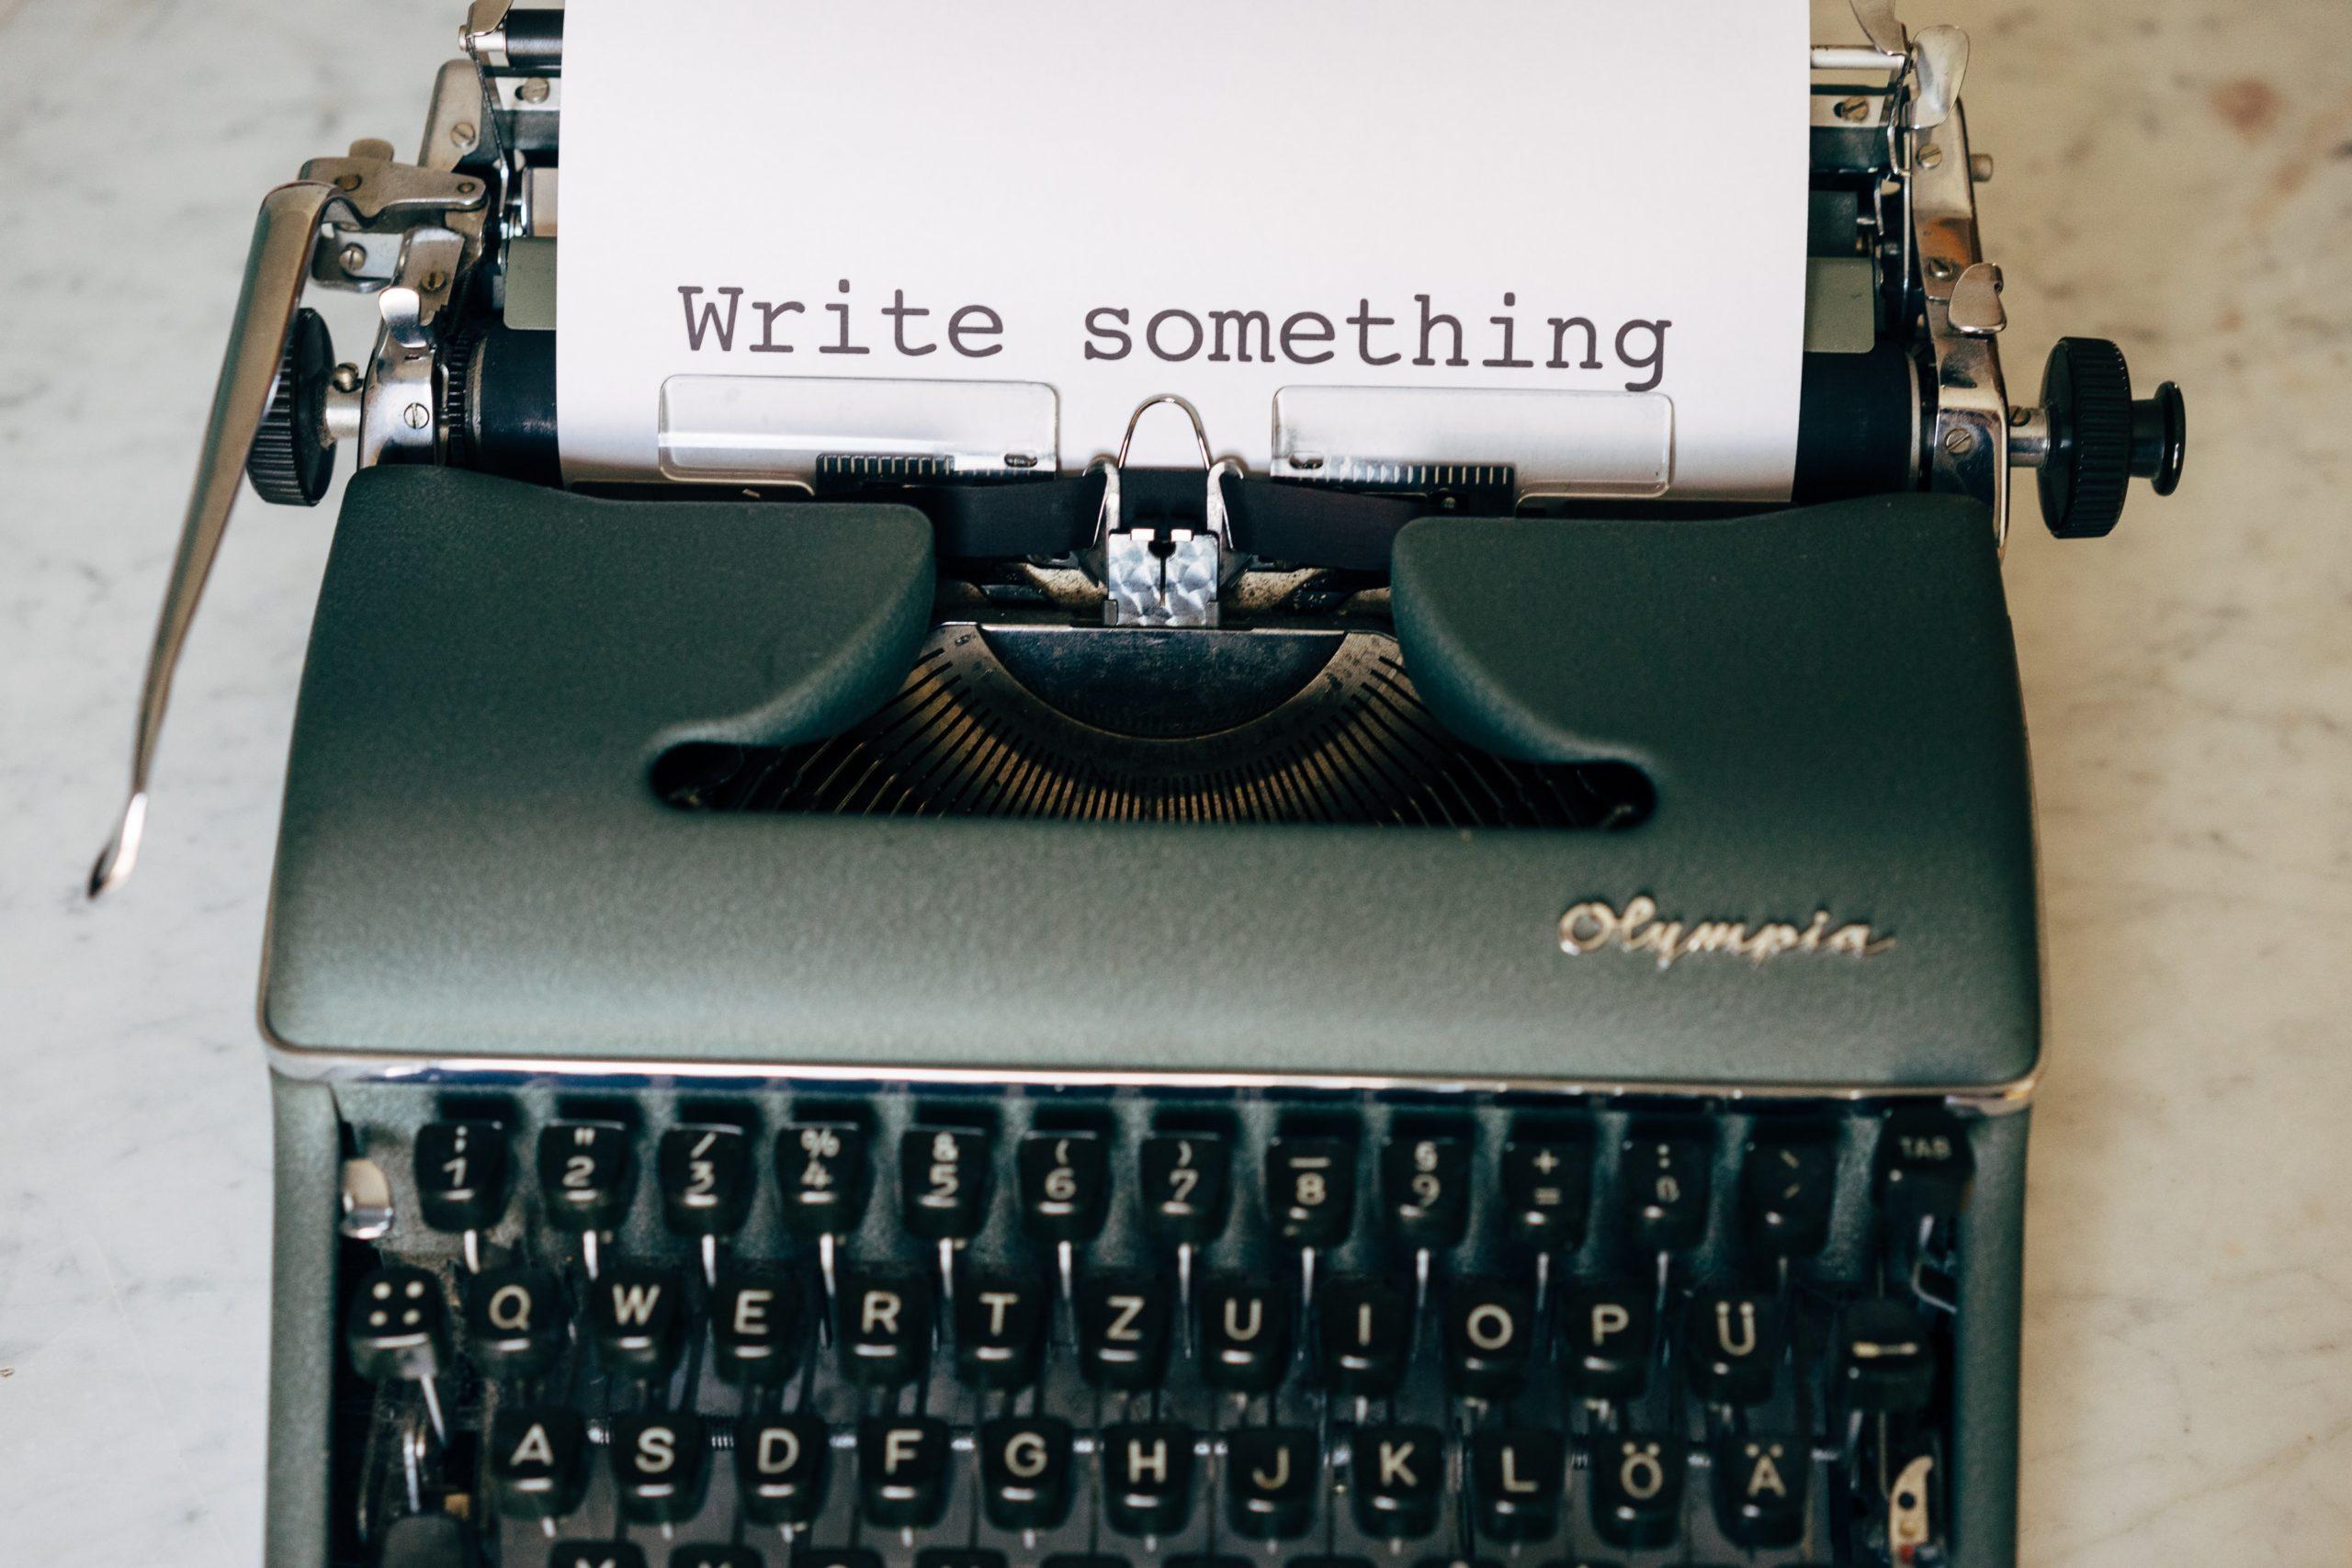 Write something at the typewriter